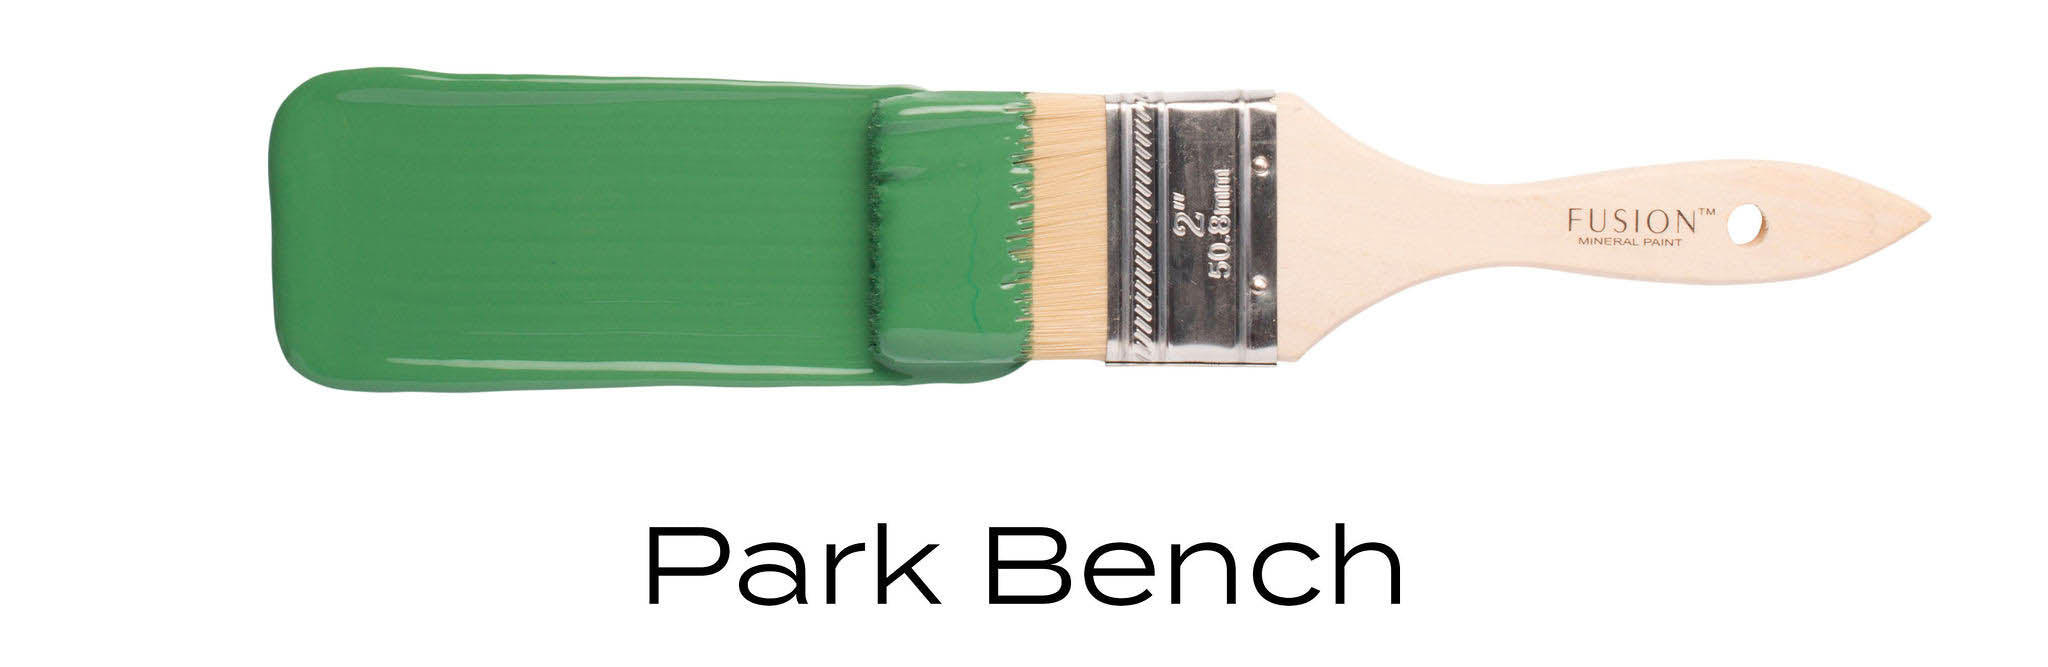 Park bench colour fusion mineral paint on paint brush